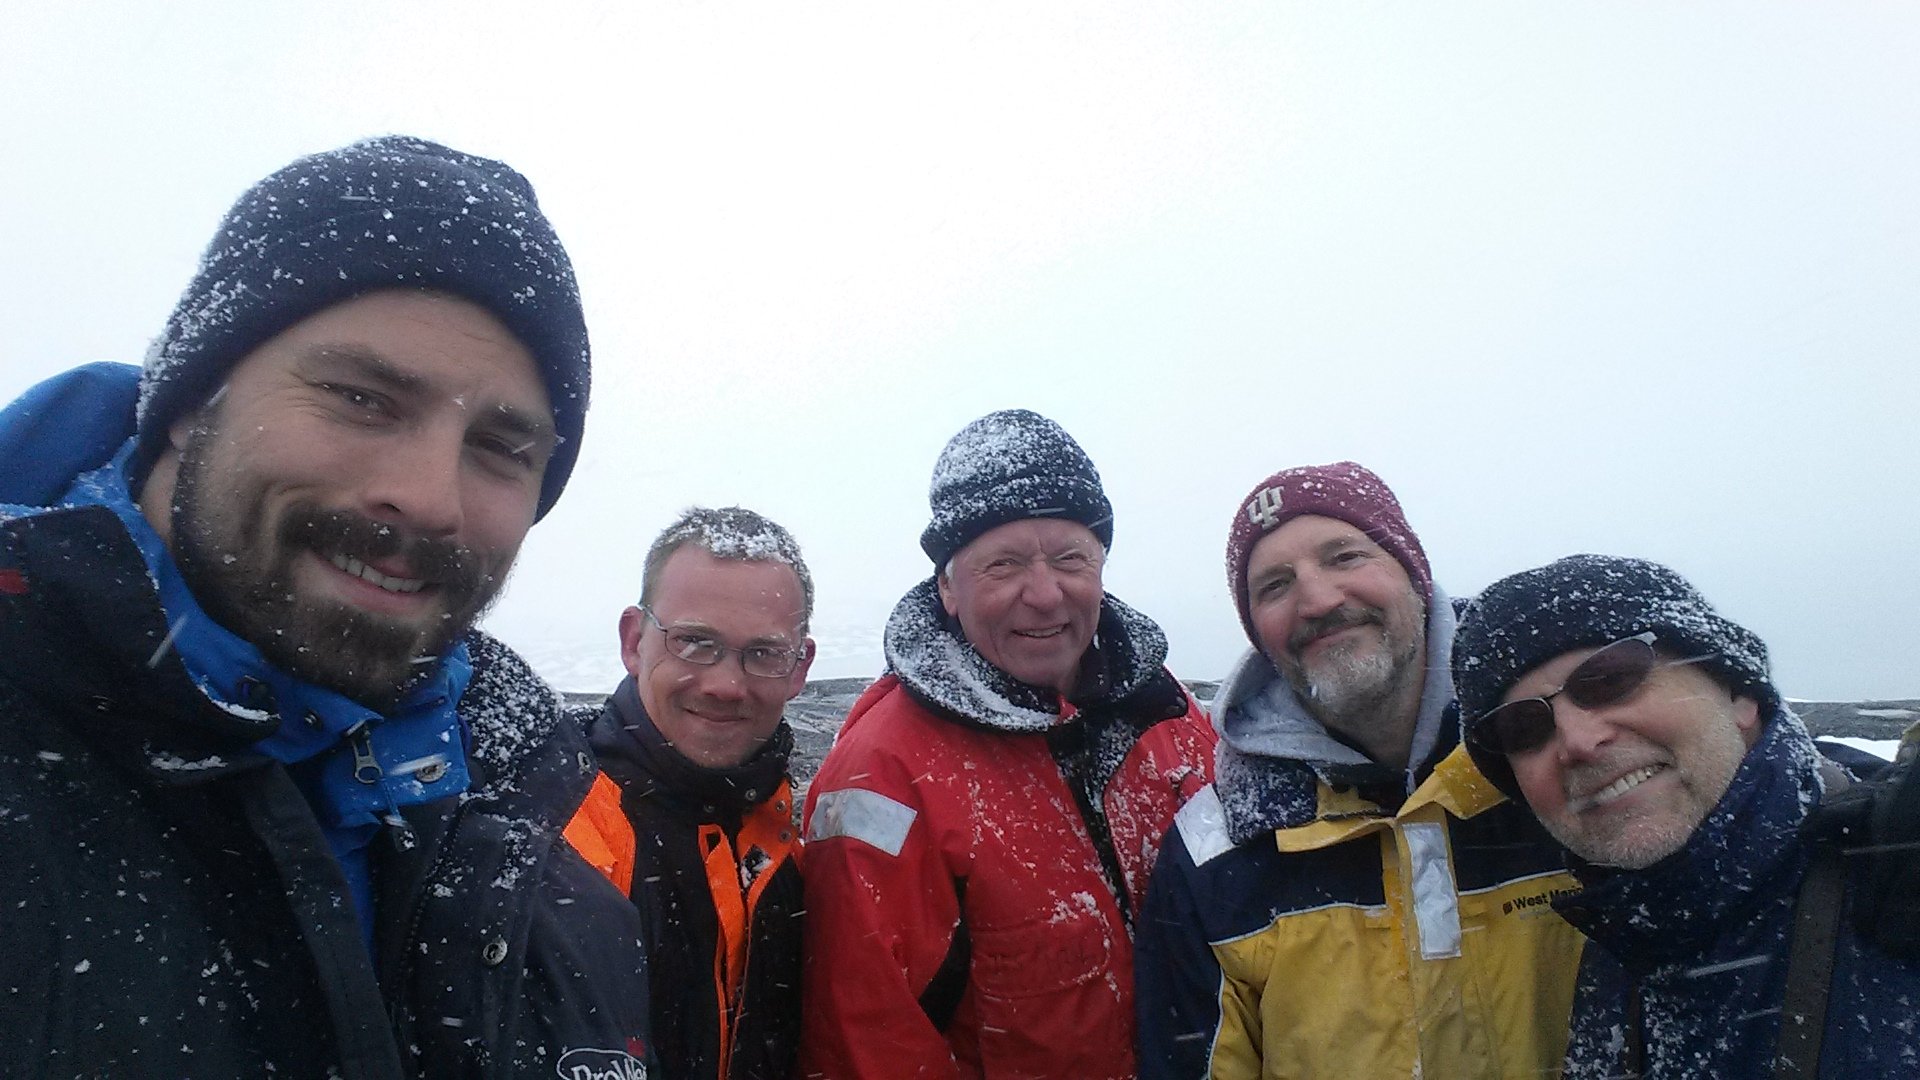  © Julius Nielsen - Expedition members. From the left: Julius Nielsen, Kristian Vedel, John F. Steffensen, Peter G. Bushnell and Ricahard Martin.